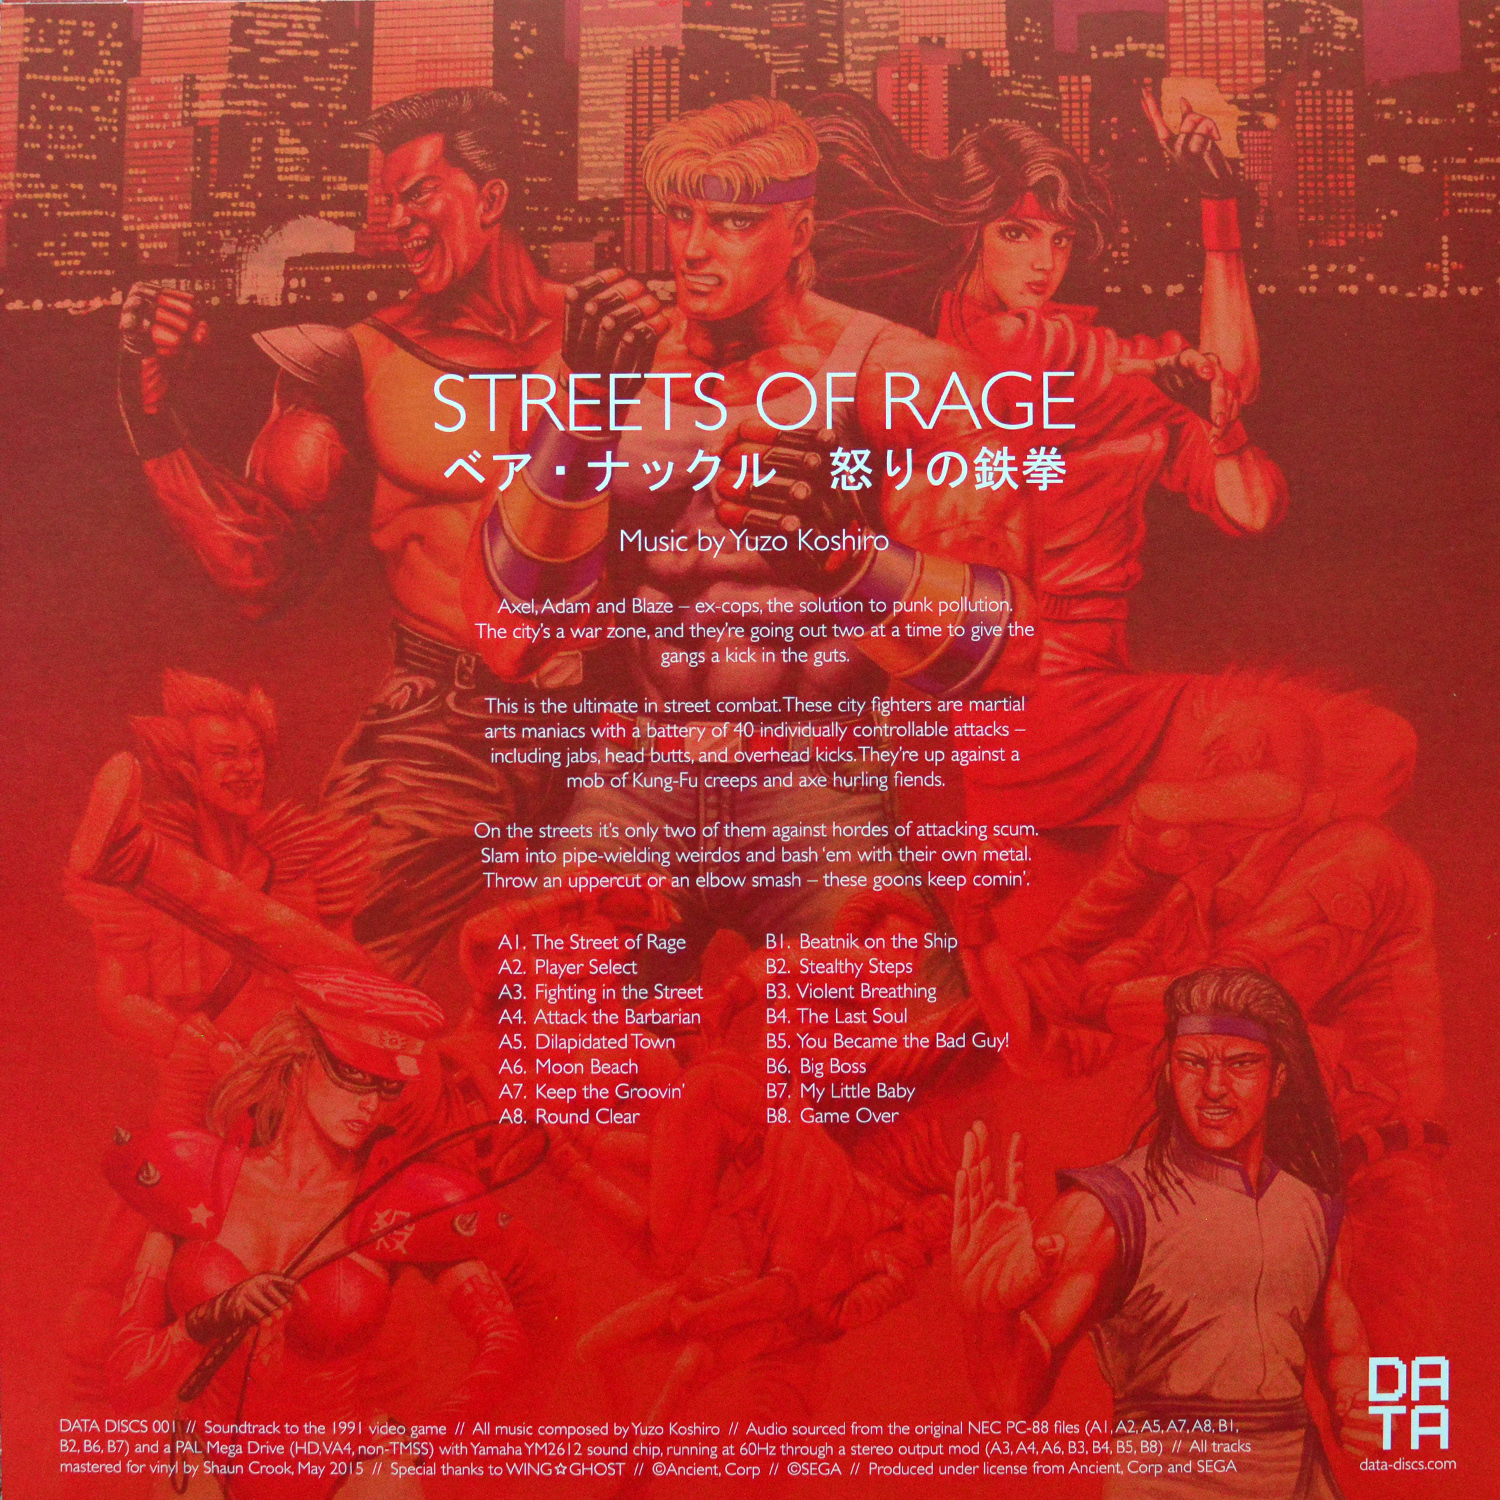 StreetsofRage Vinyl UK back.jpg